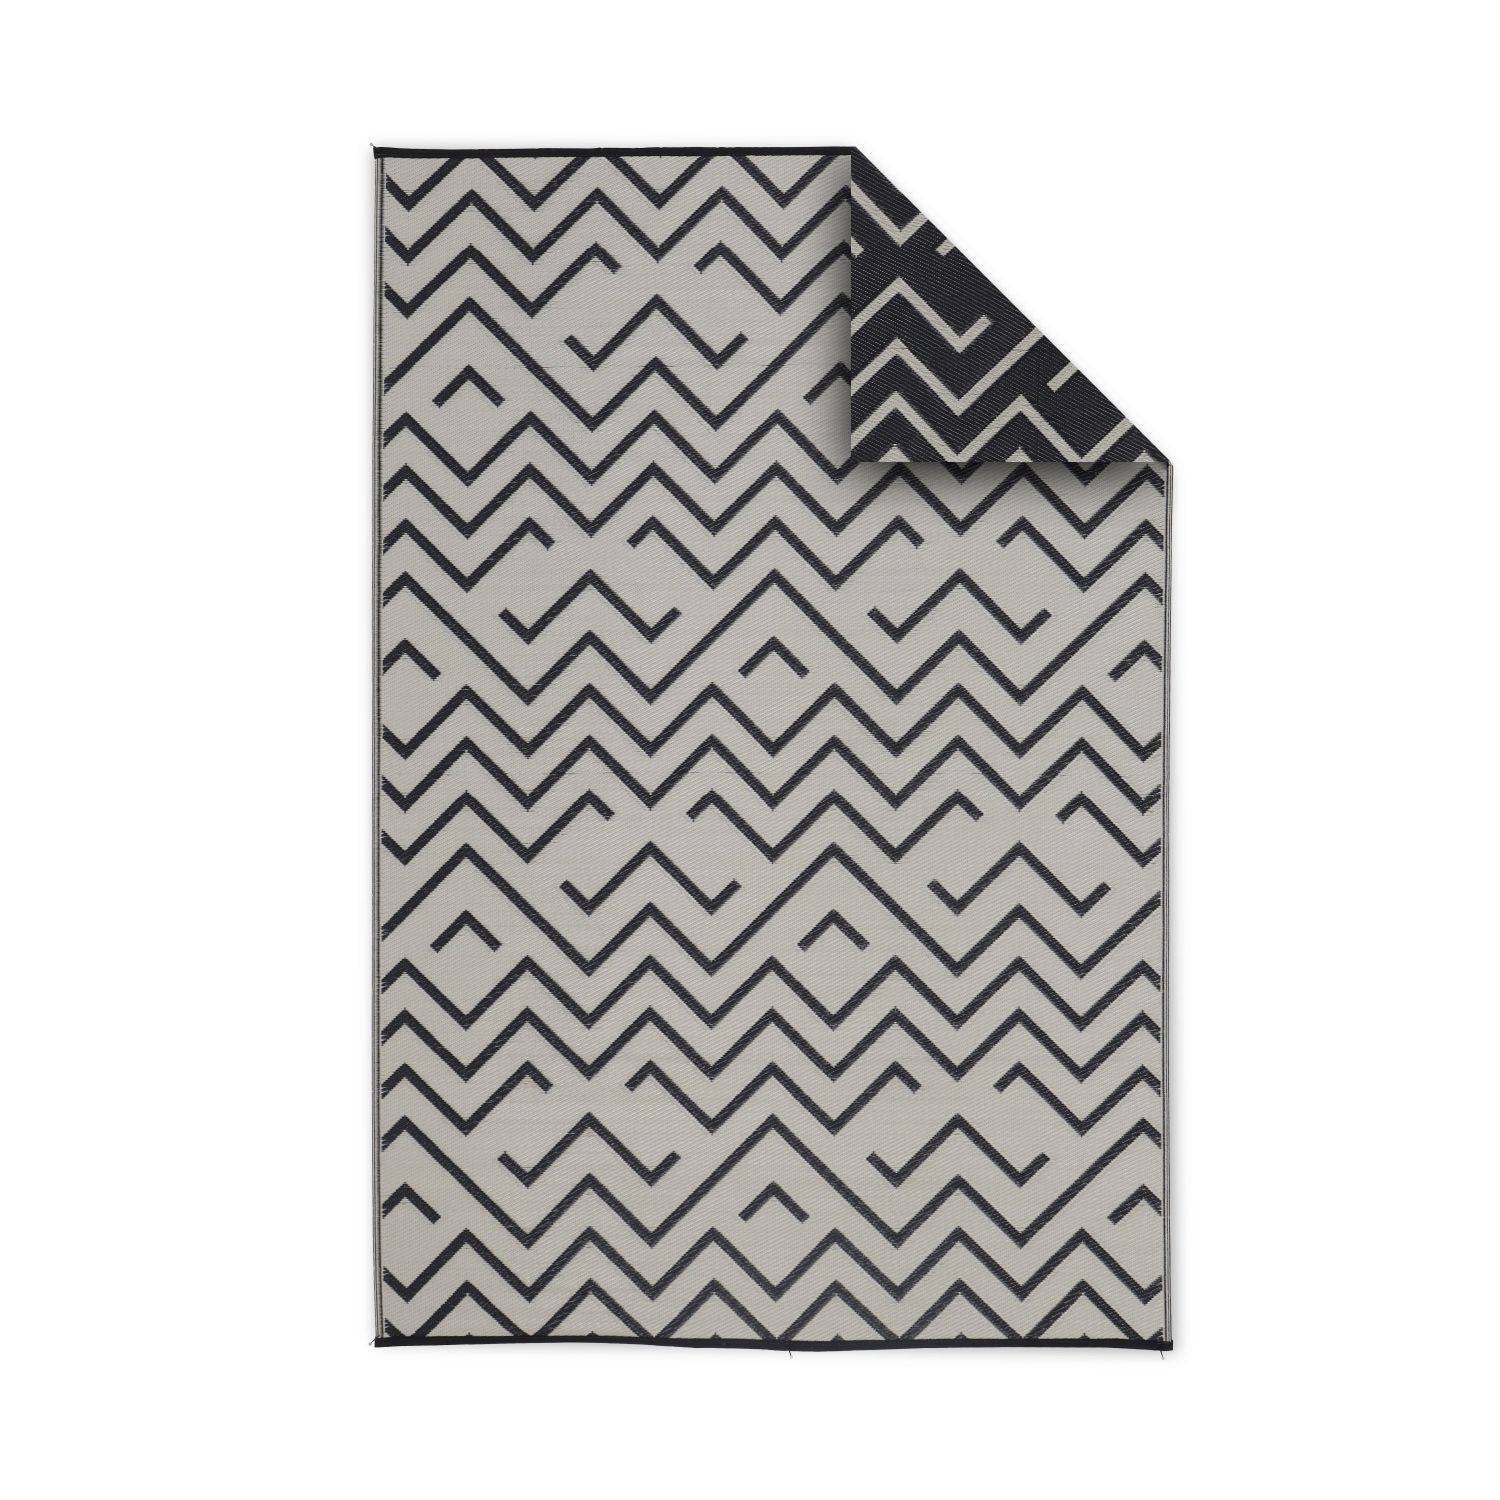 Tapis d’extérieur 180x270cm SYDNEY - Rectangulaire, motif vagues noir / beige, jacquard, réversible, indoor / outdoor Photo1